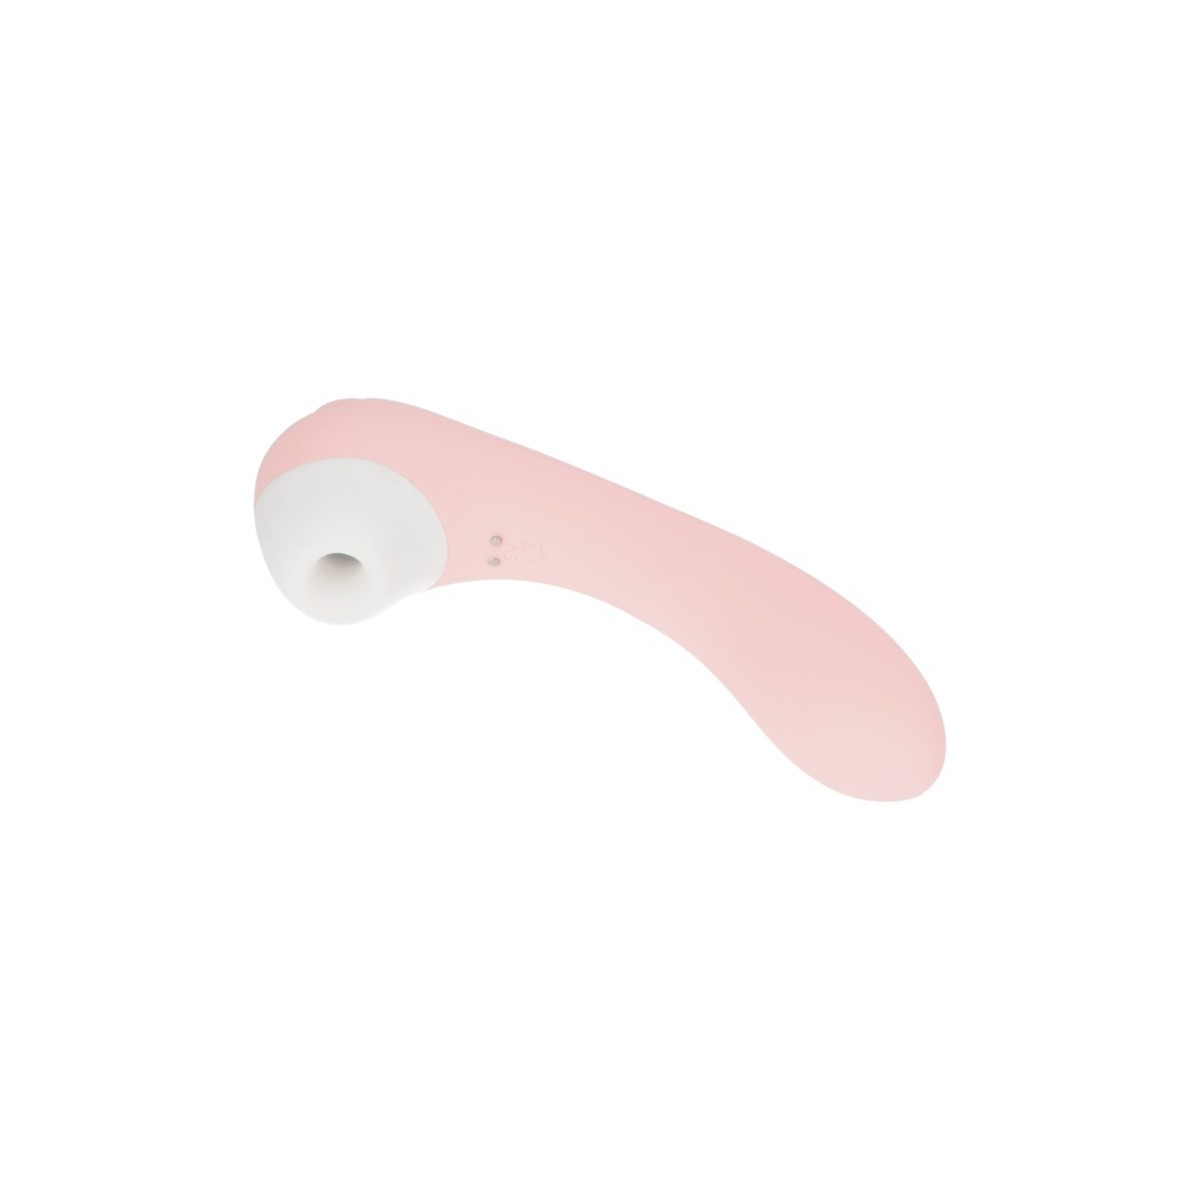 Vibratore vaginale anale con succhia clitoride Clitoral stimulator Pink Obsession